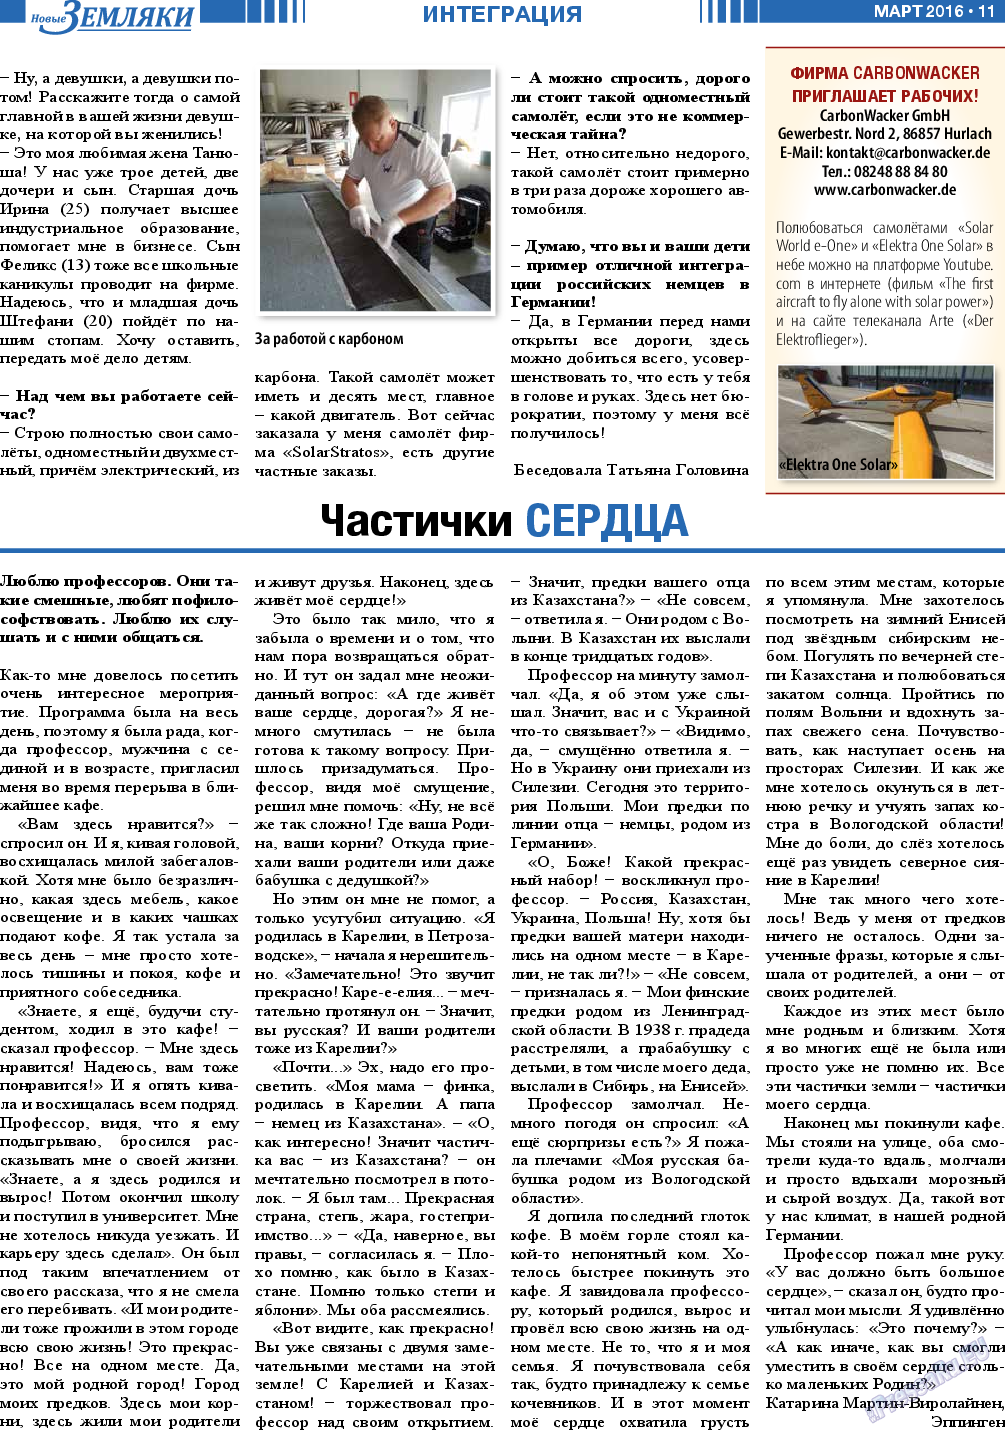 Новые Земляки, газета. 2016 №3 стр.11